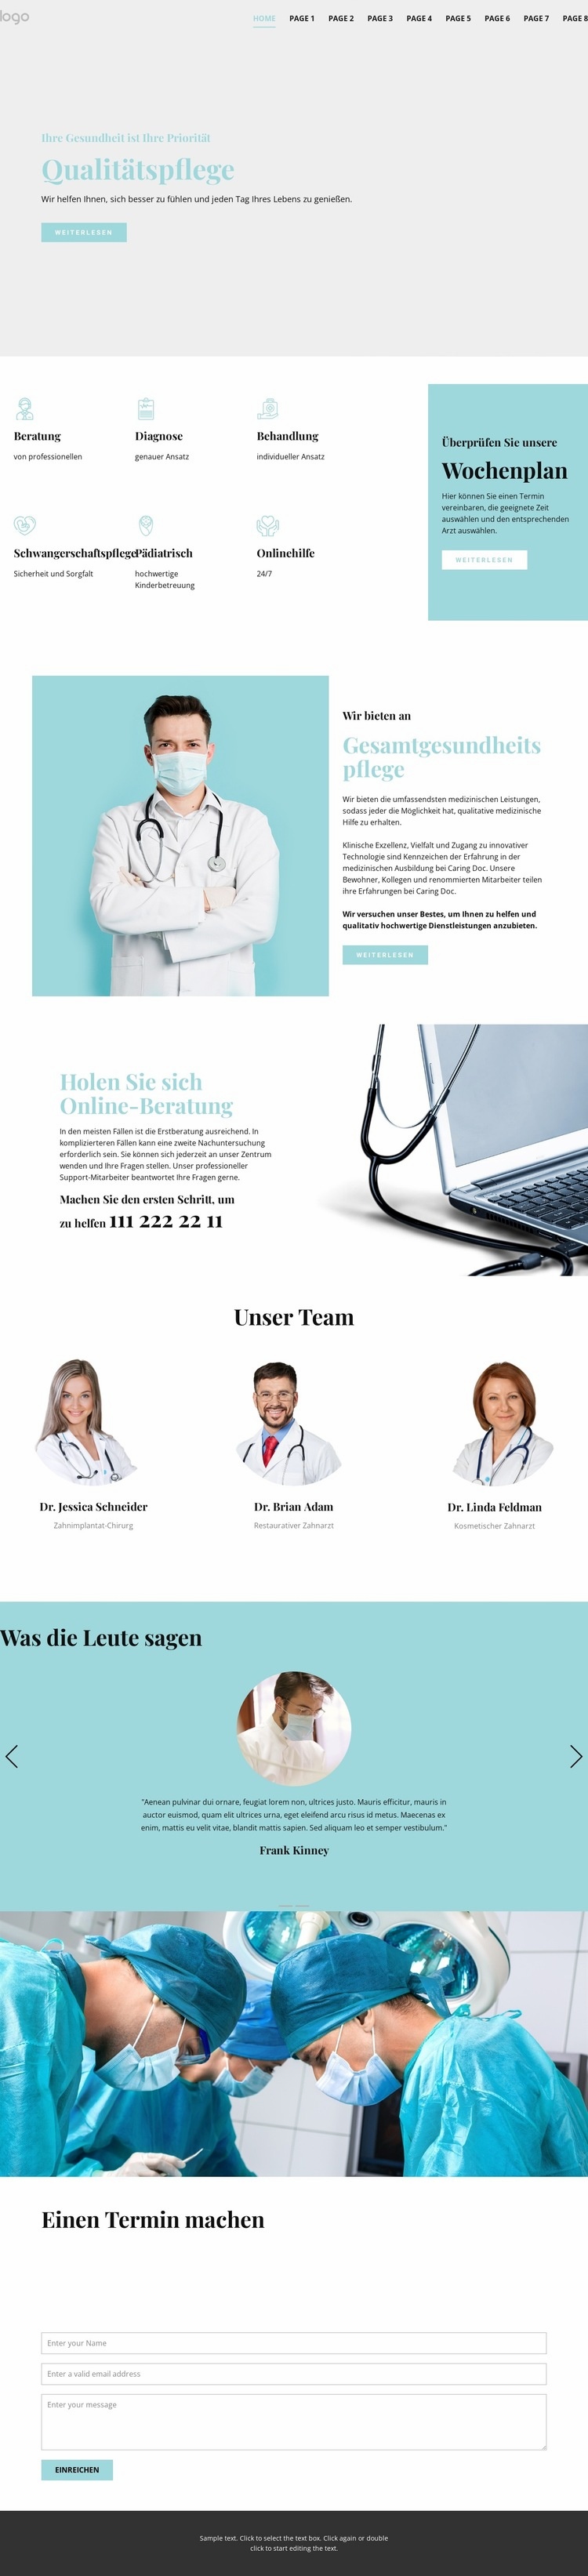 Qualitativ hochwertige medizinische Versorgung HTML Website Builder